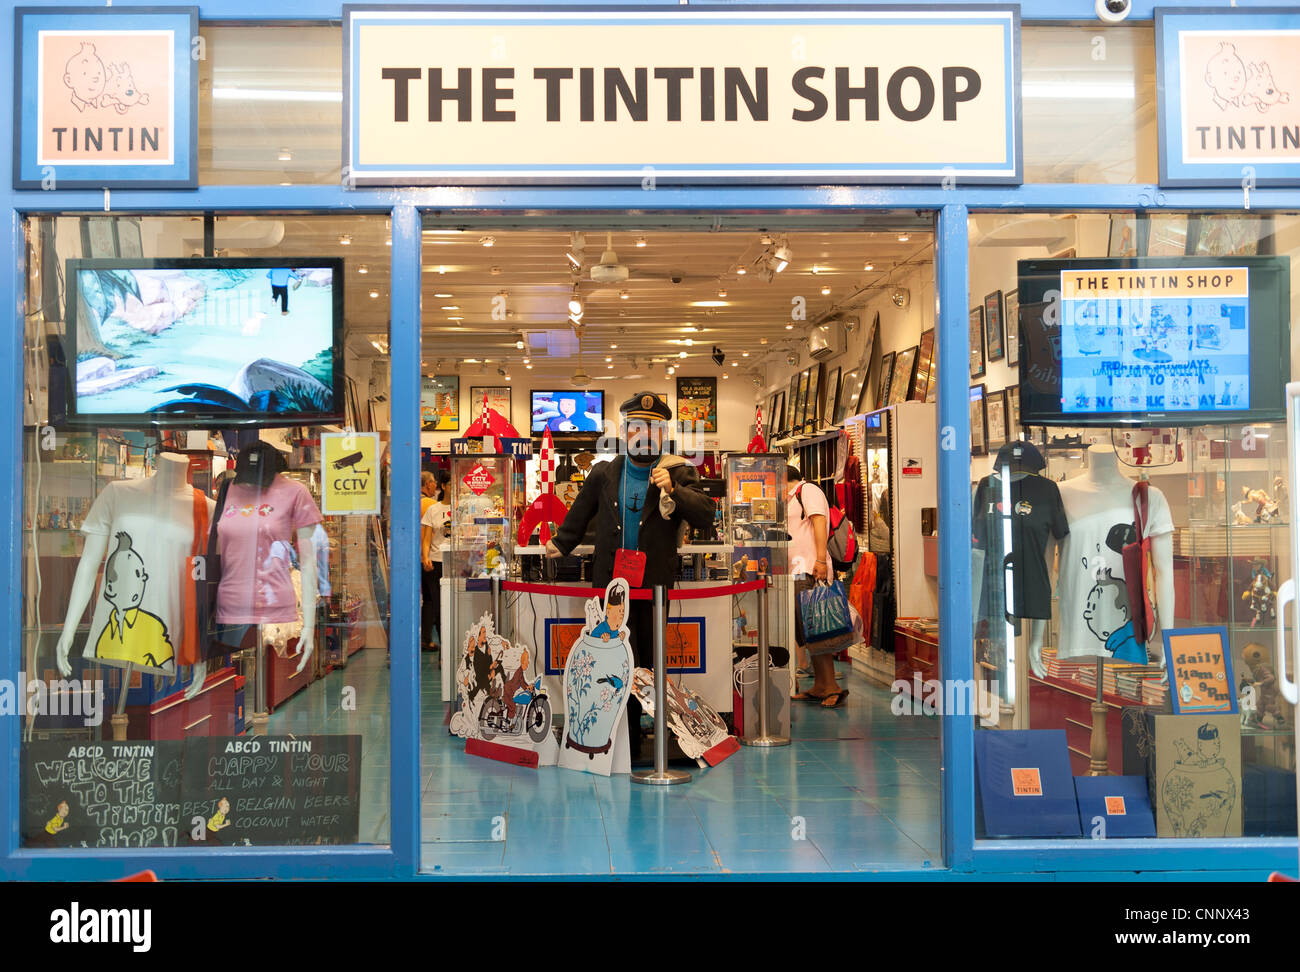 The Tintin Shop, Chinatown street market, Singapore, Malaysia Stock Photo